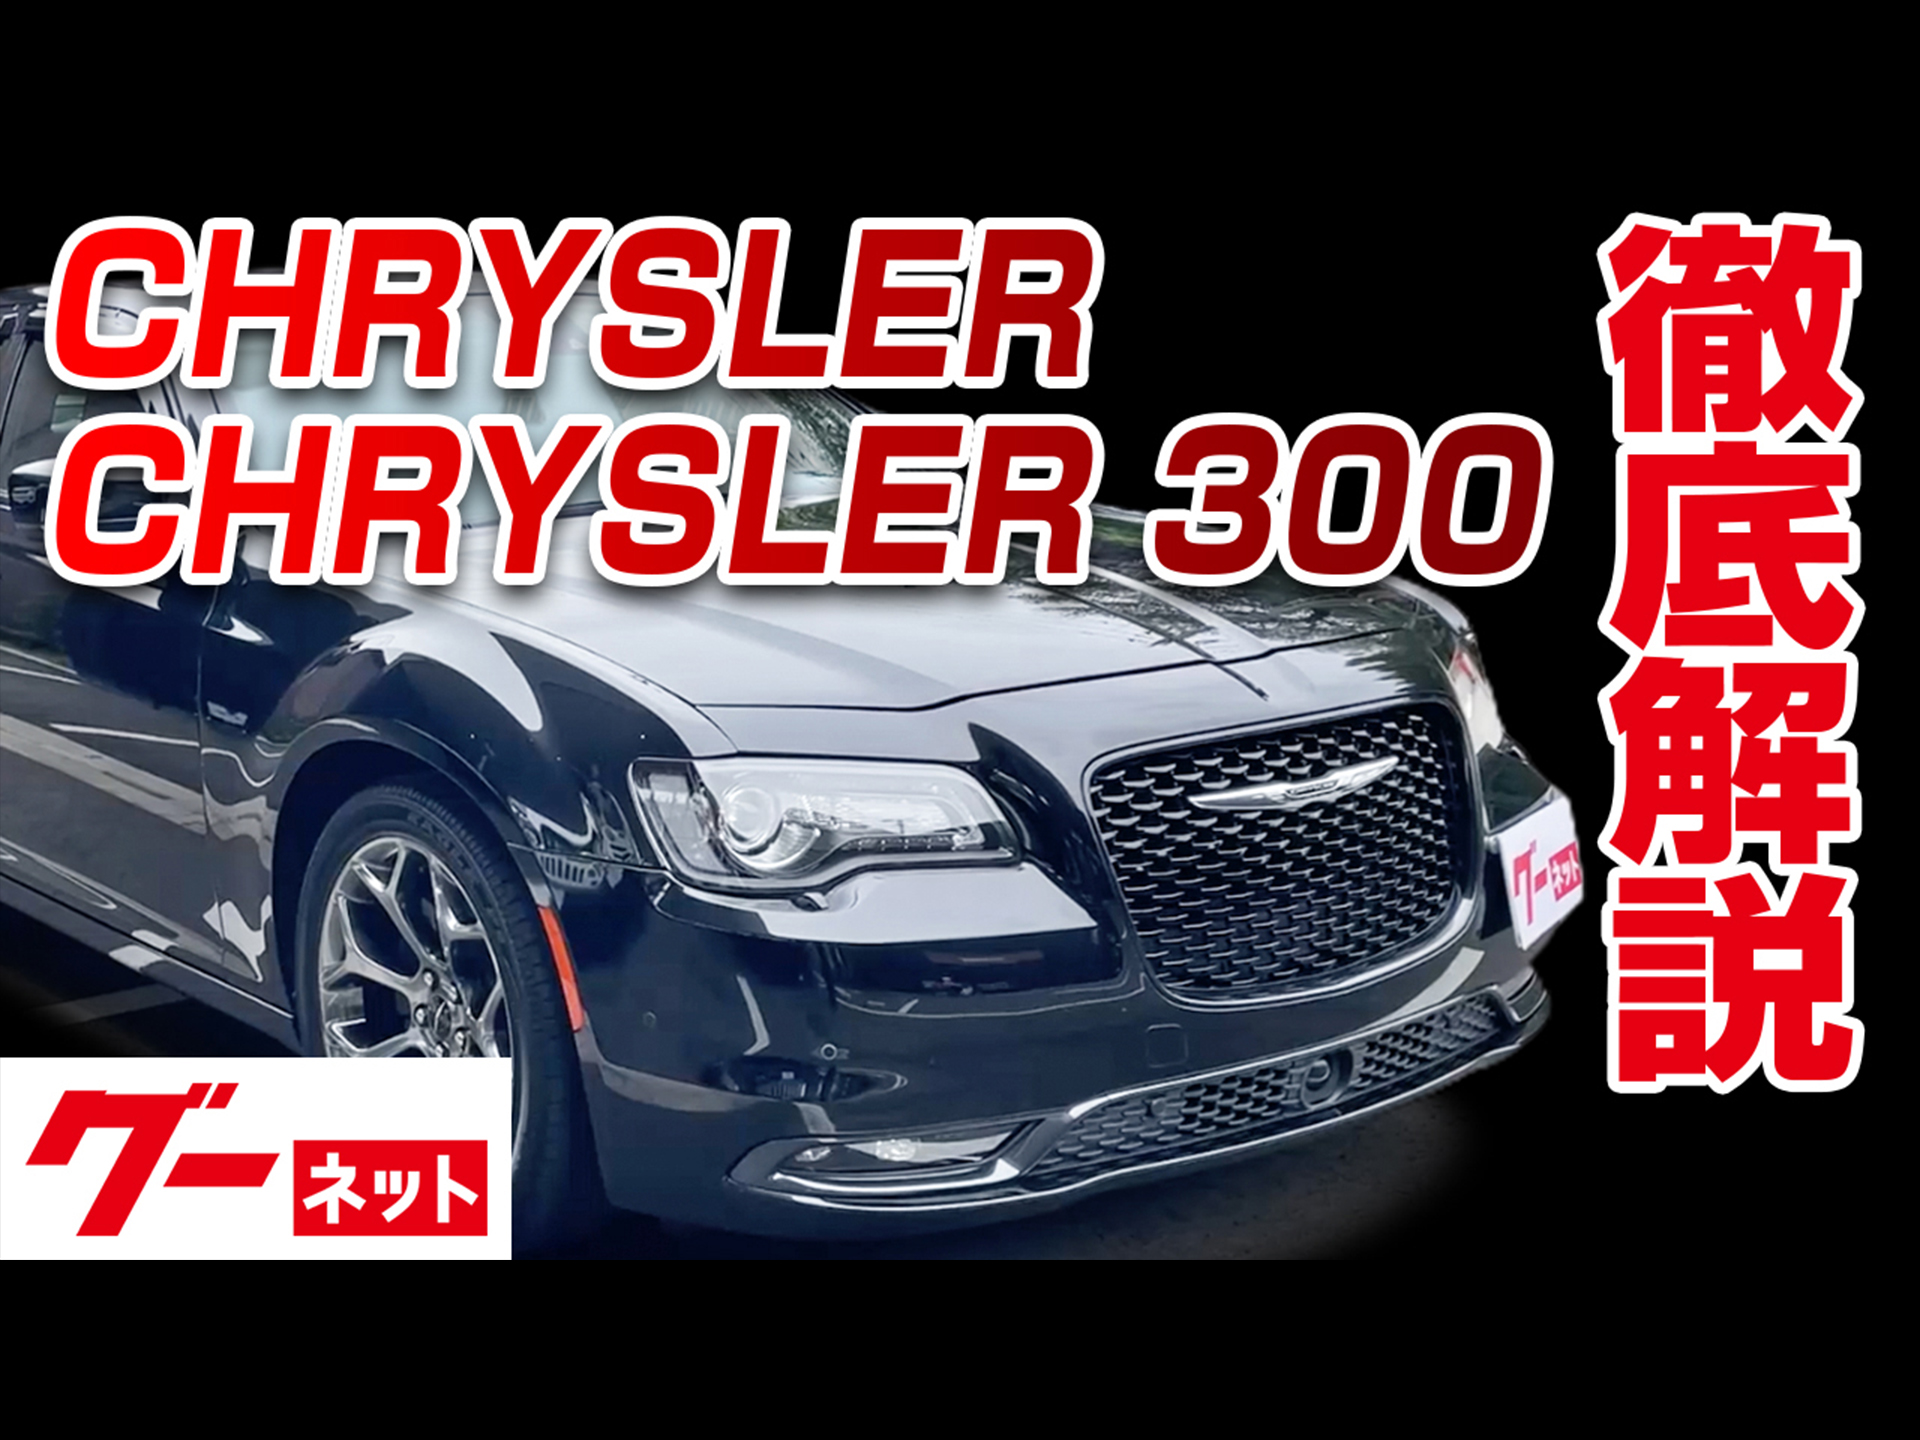 【クライスラー クライスラー300】300S グーネット動画カタログ